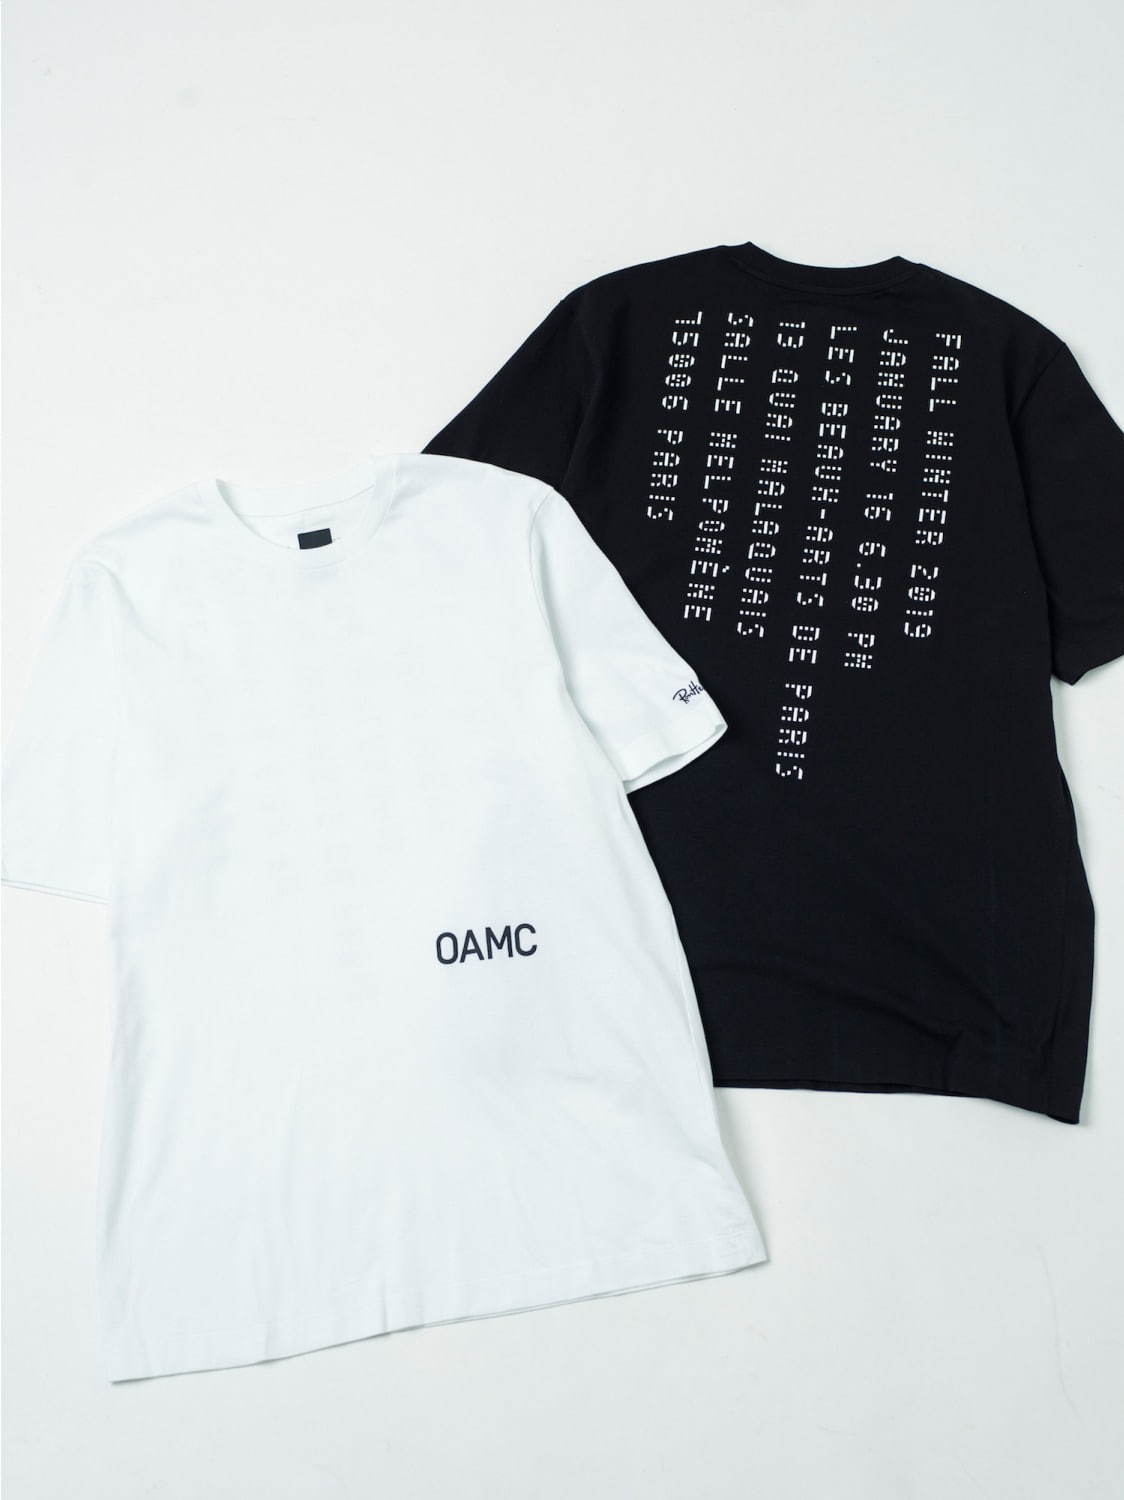 OAMCショースタッフ着用のユニフォーム、ロンハーマン10周年記念